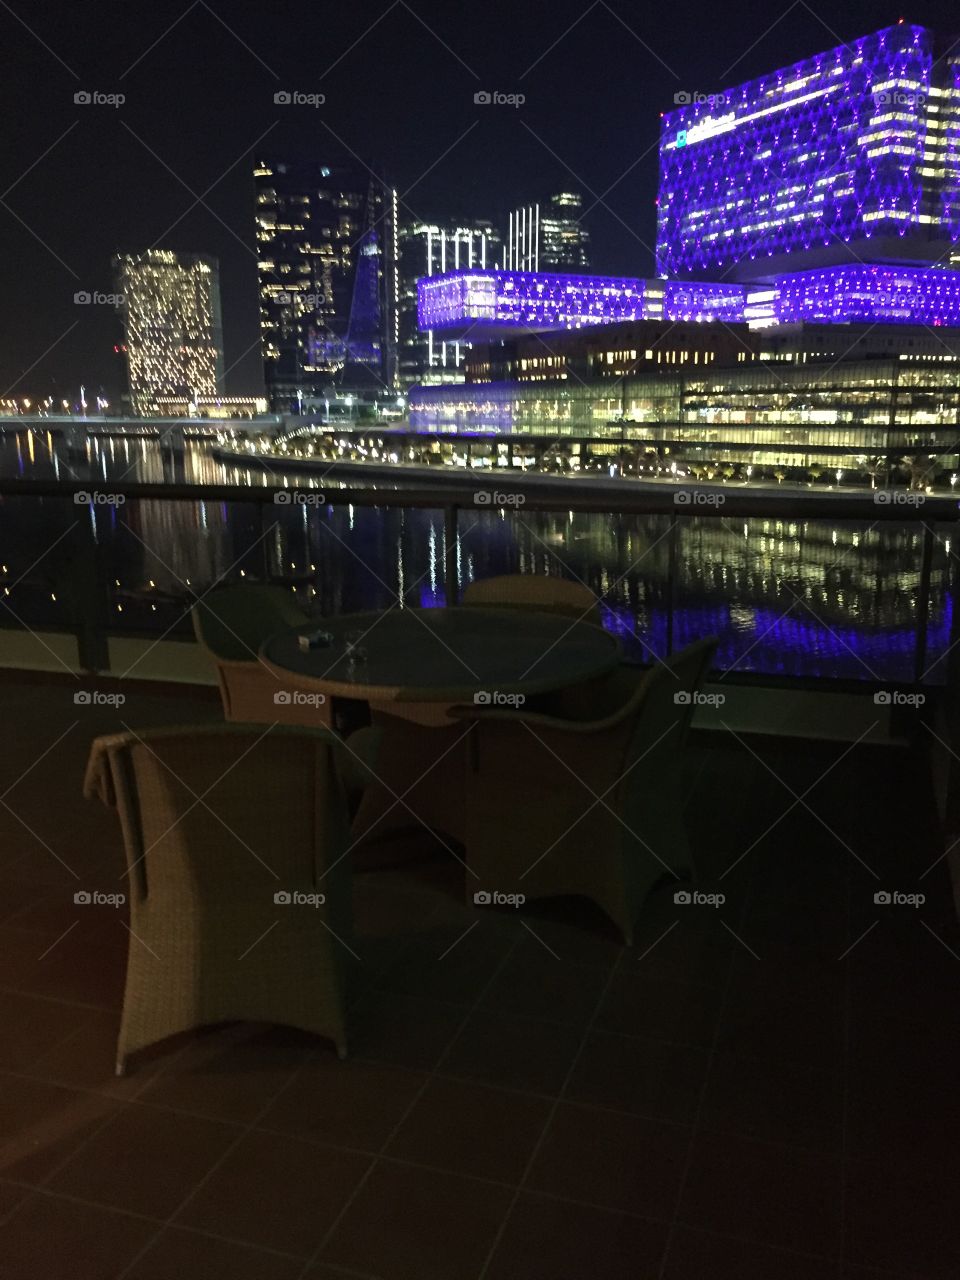 What a view! Abu Dhabi